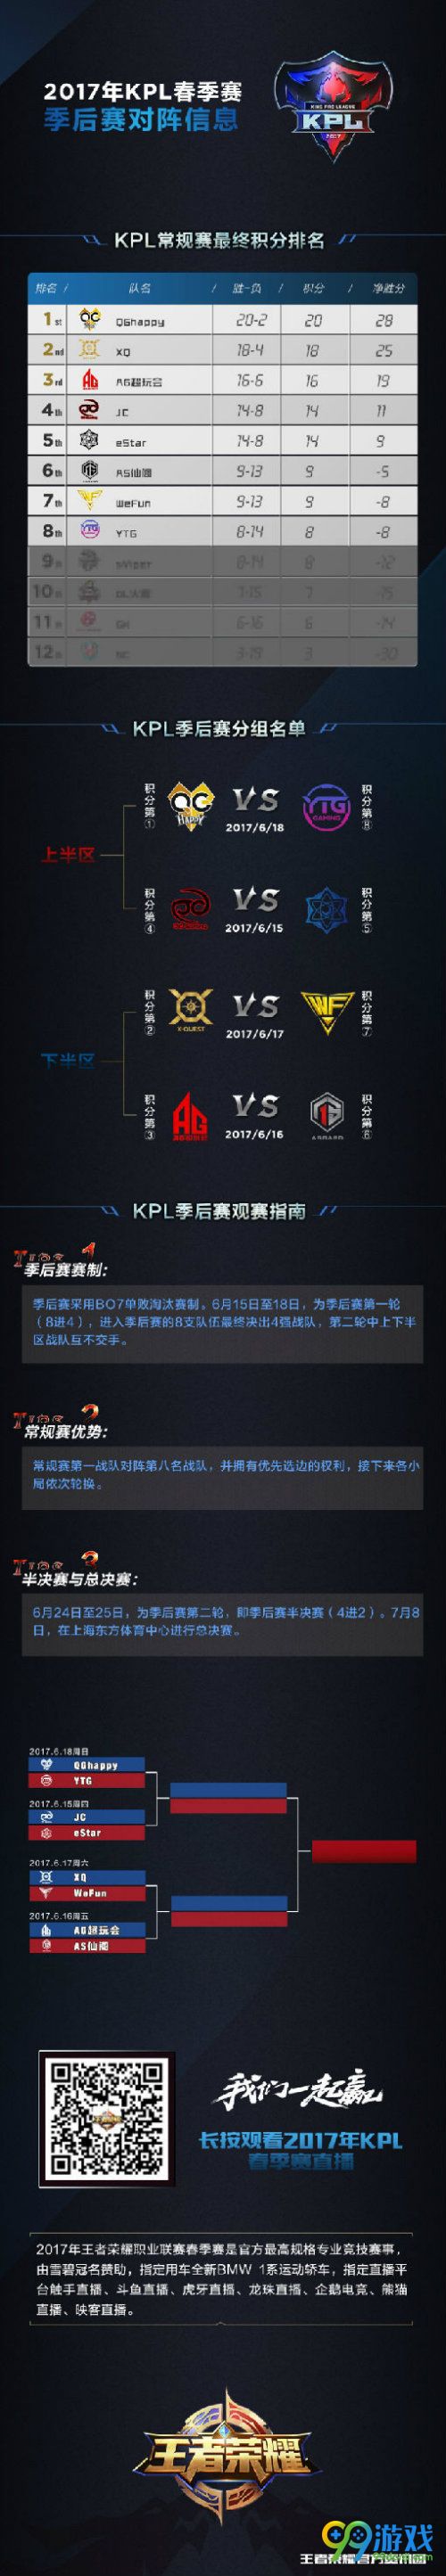 王者荣耀KPL季后赛6月15日开启 KPL春季赛季后赛对阵信息一览